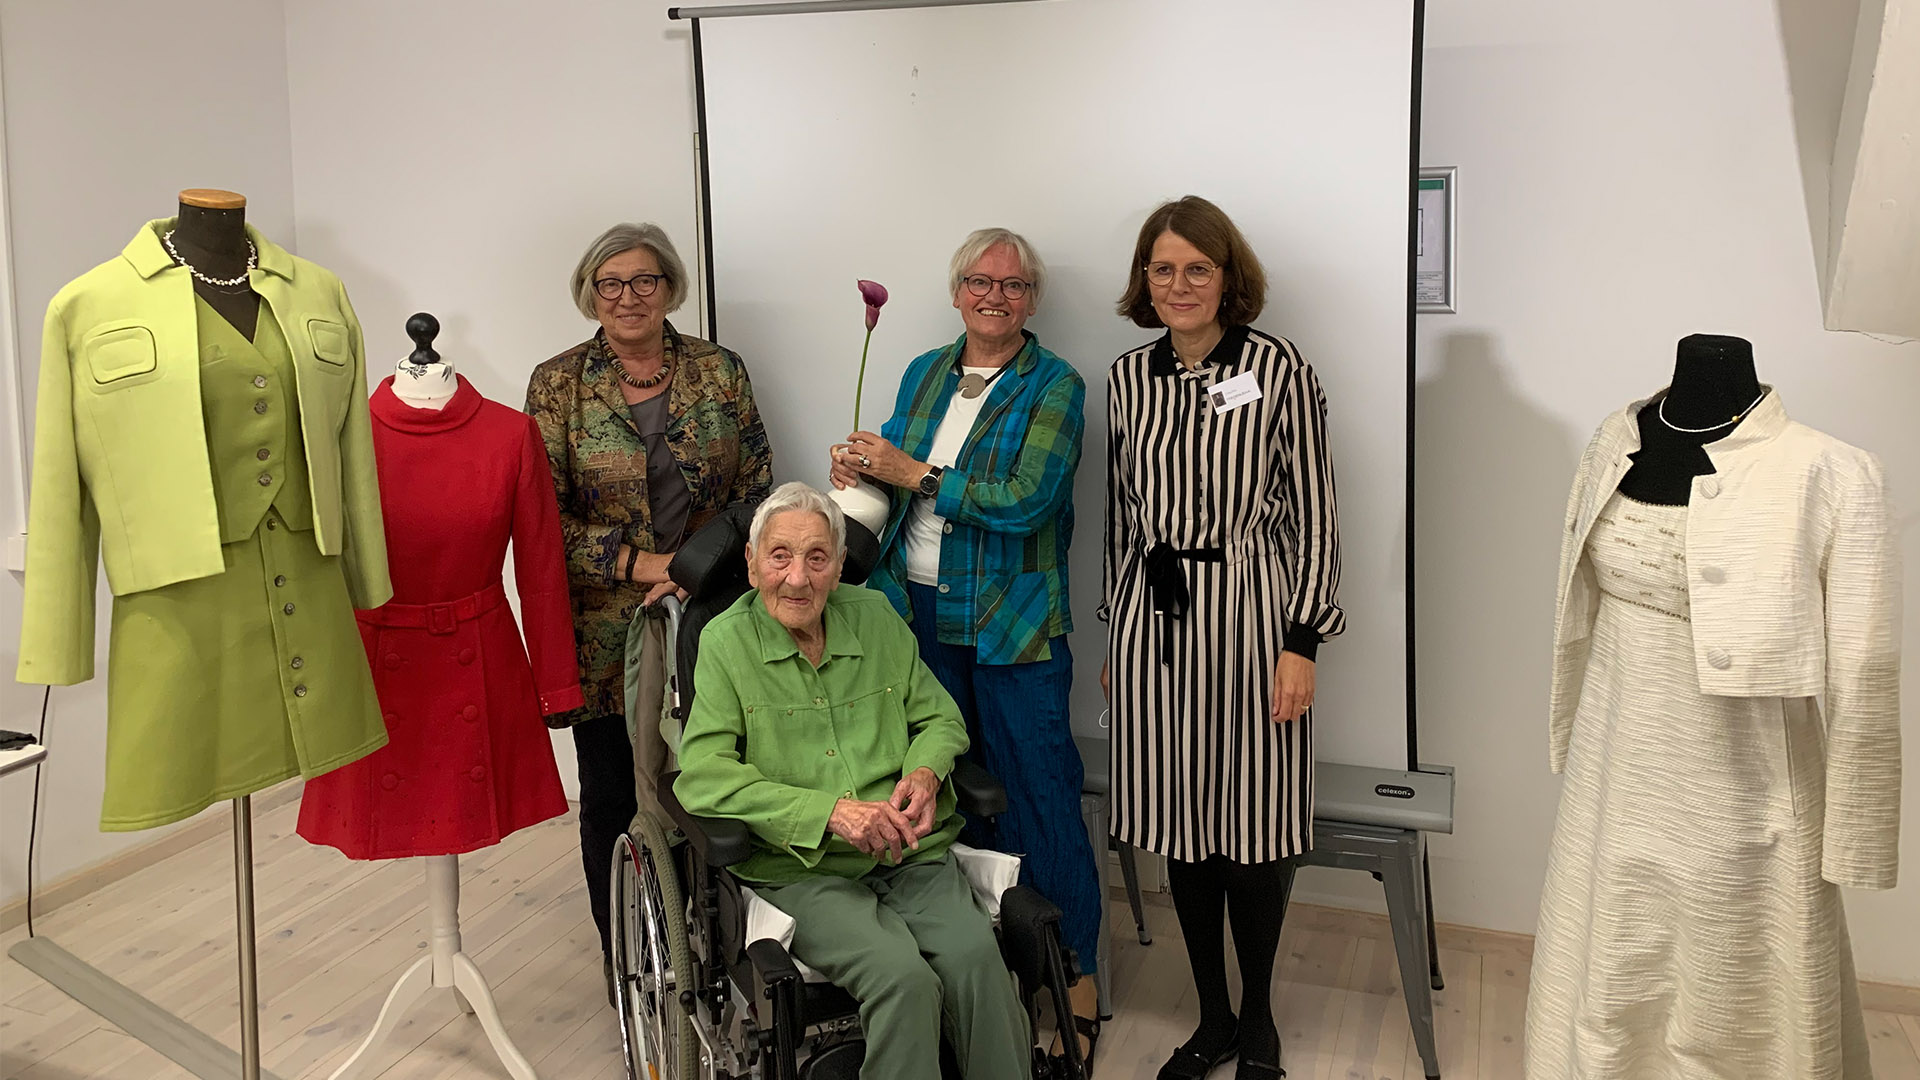 Das Foto zeigt Gabi Schrader, Ingrid Götze, Sieglinde Eberhard und Claudia Hagemann nach dem Vortrag über die Kleidermacherin Ruth Zimmermann im Bürger Museum. Sie stehen vor einer Leinwand, rechts und links von Ihnen befinden sich Kleider aus den 60er Jahren.